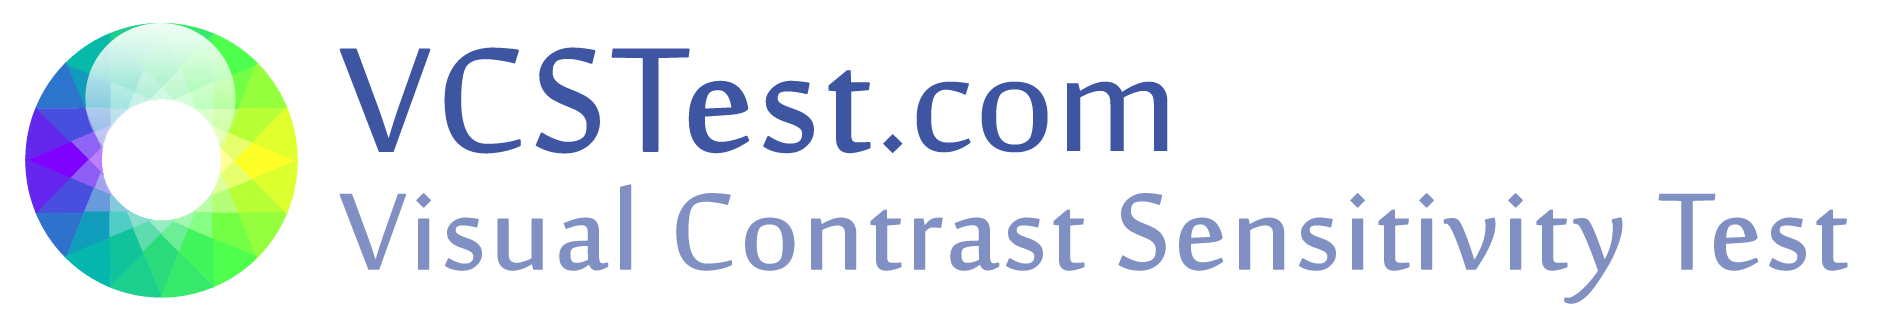 VCSTest.com Logo